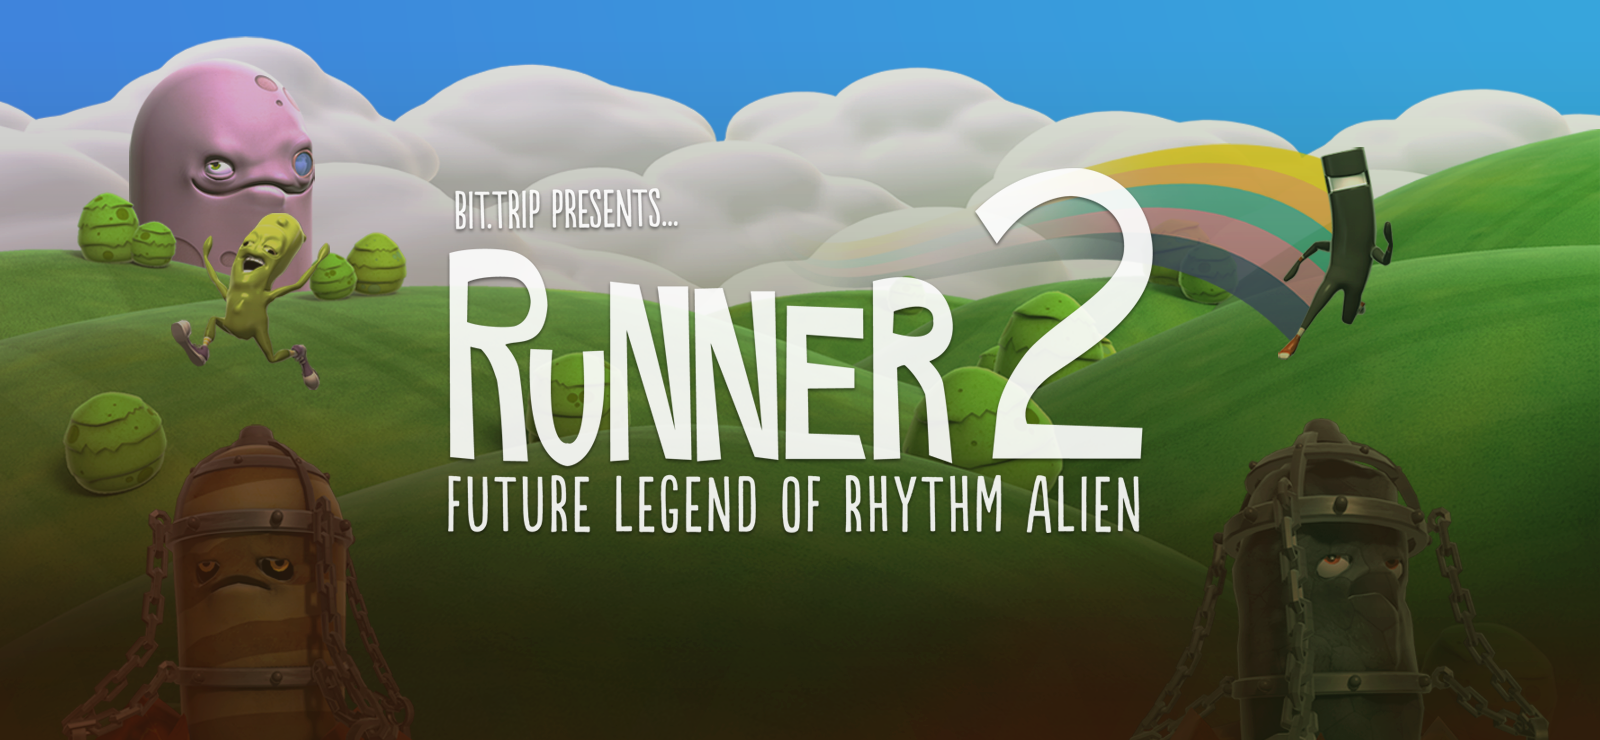 BIT.TRIP Presents... Runner2: Future Legend Of Rhythm Alien